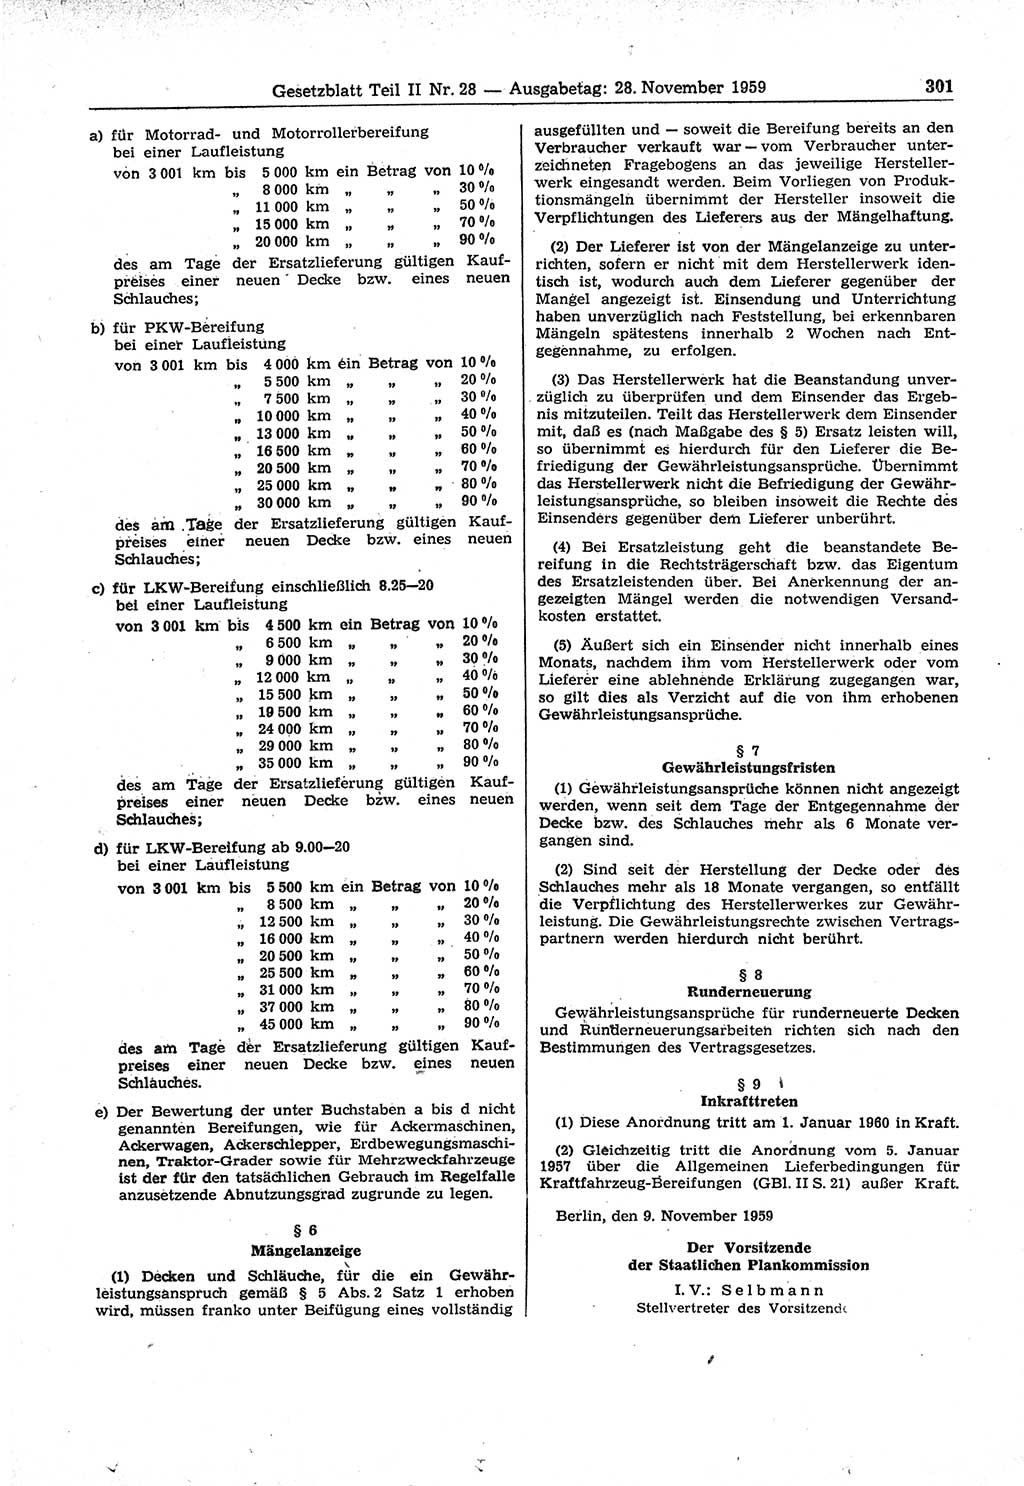 Gesetzblatt (GBl.) der Deutschen Demokratischen Republik (DDR) Teil ⅠⅠ 1959, Seite 301 (GBl. DDR ⅠⅠ 1959, S. 301)